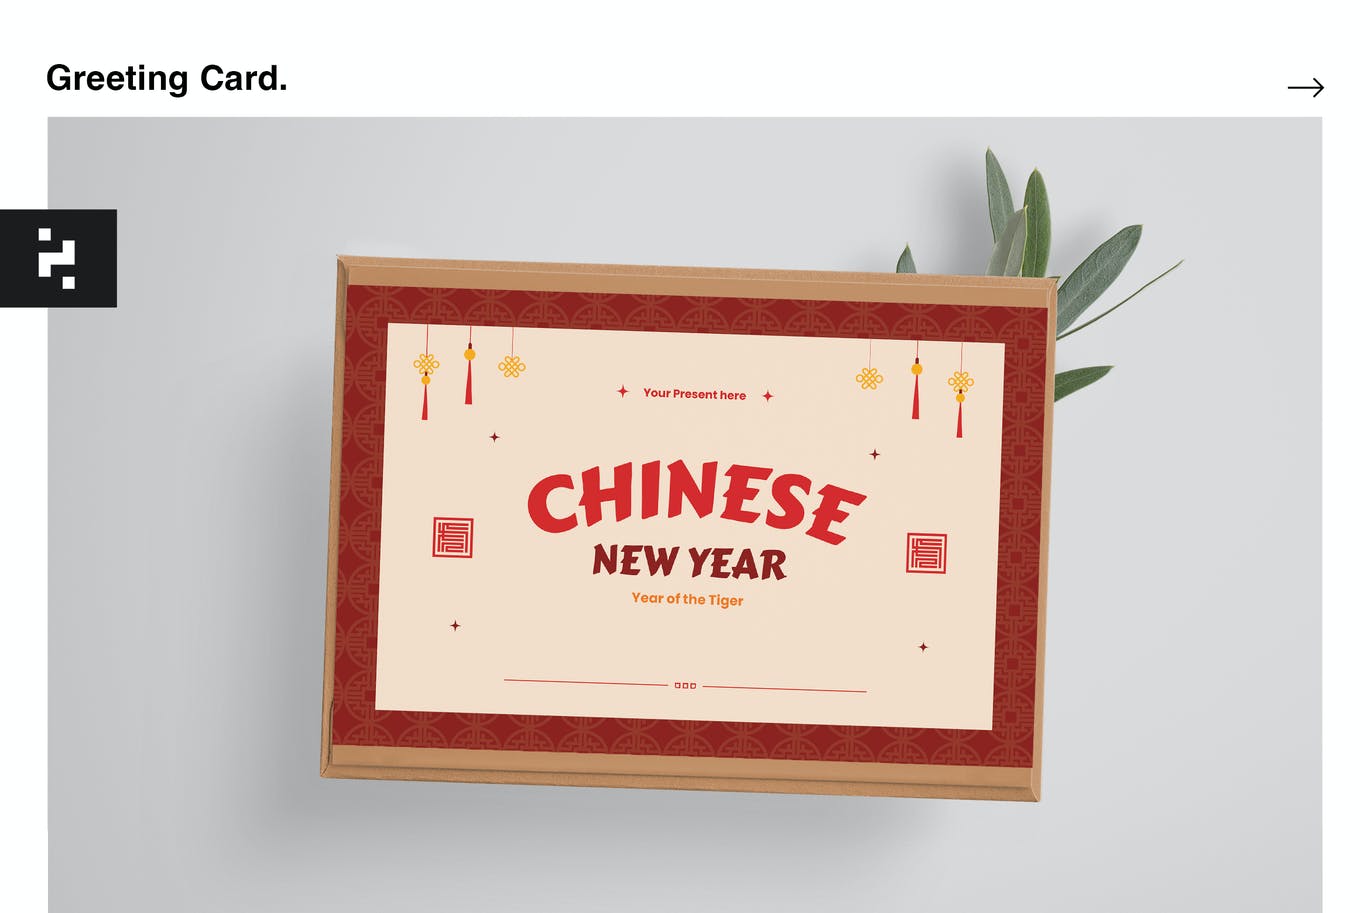 高品质的简约中国新年春节贺卡海报设计模板-AI, EPS, PSD